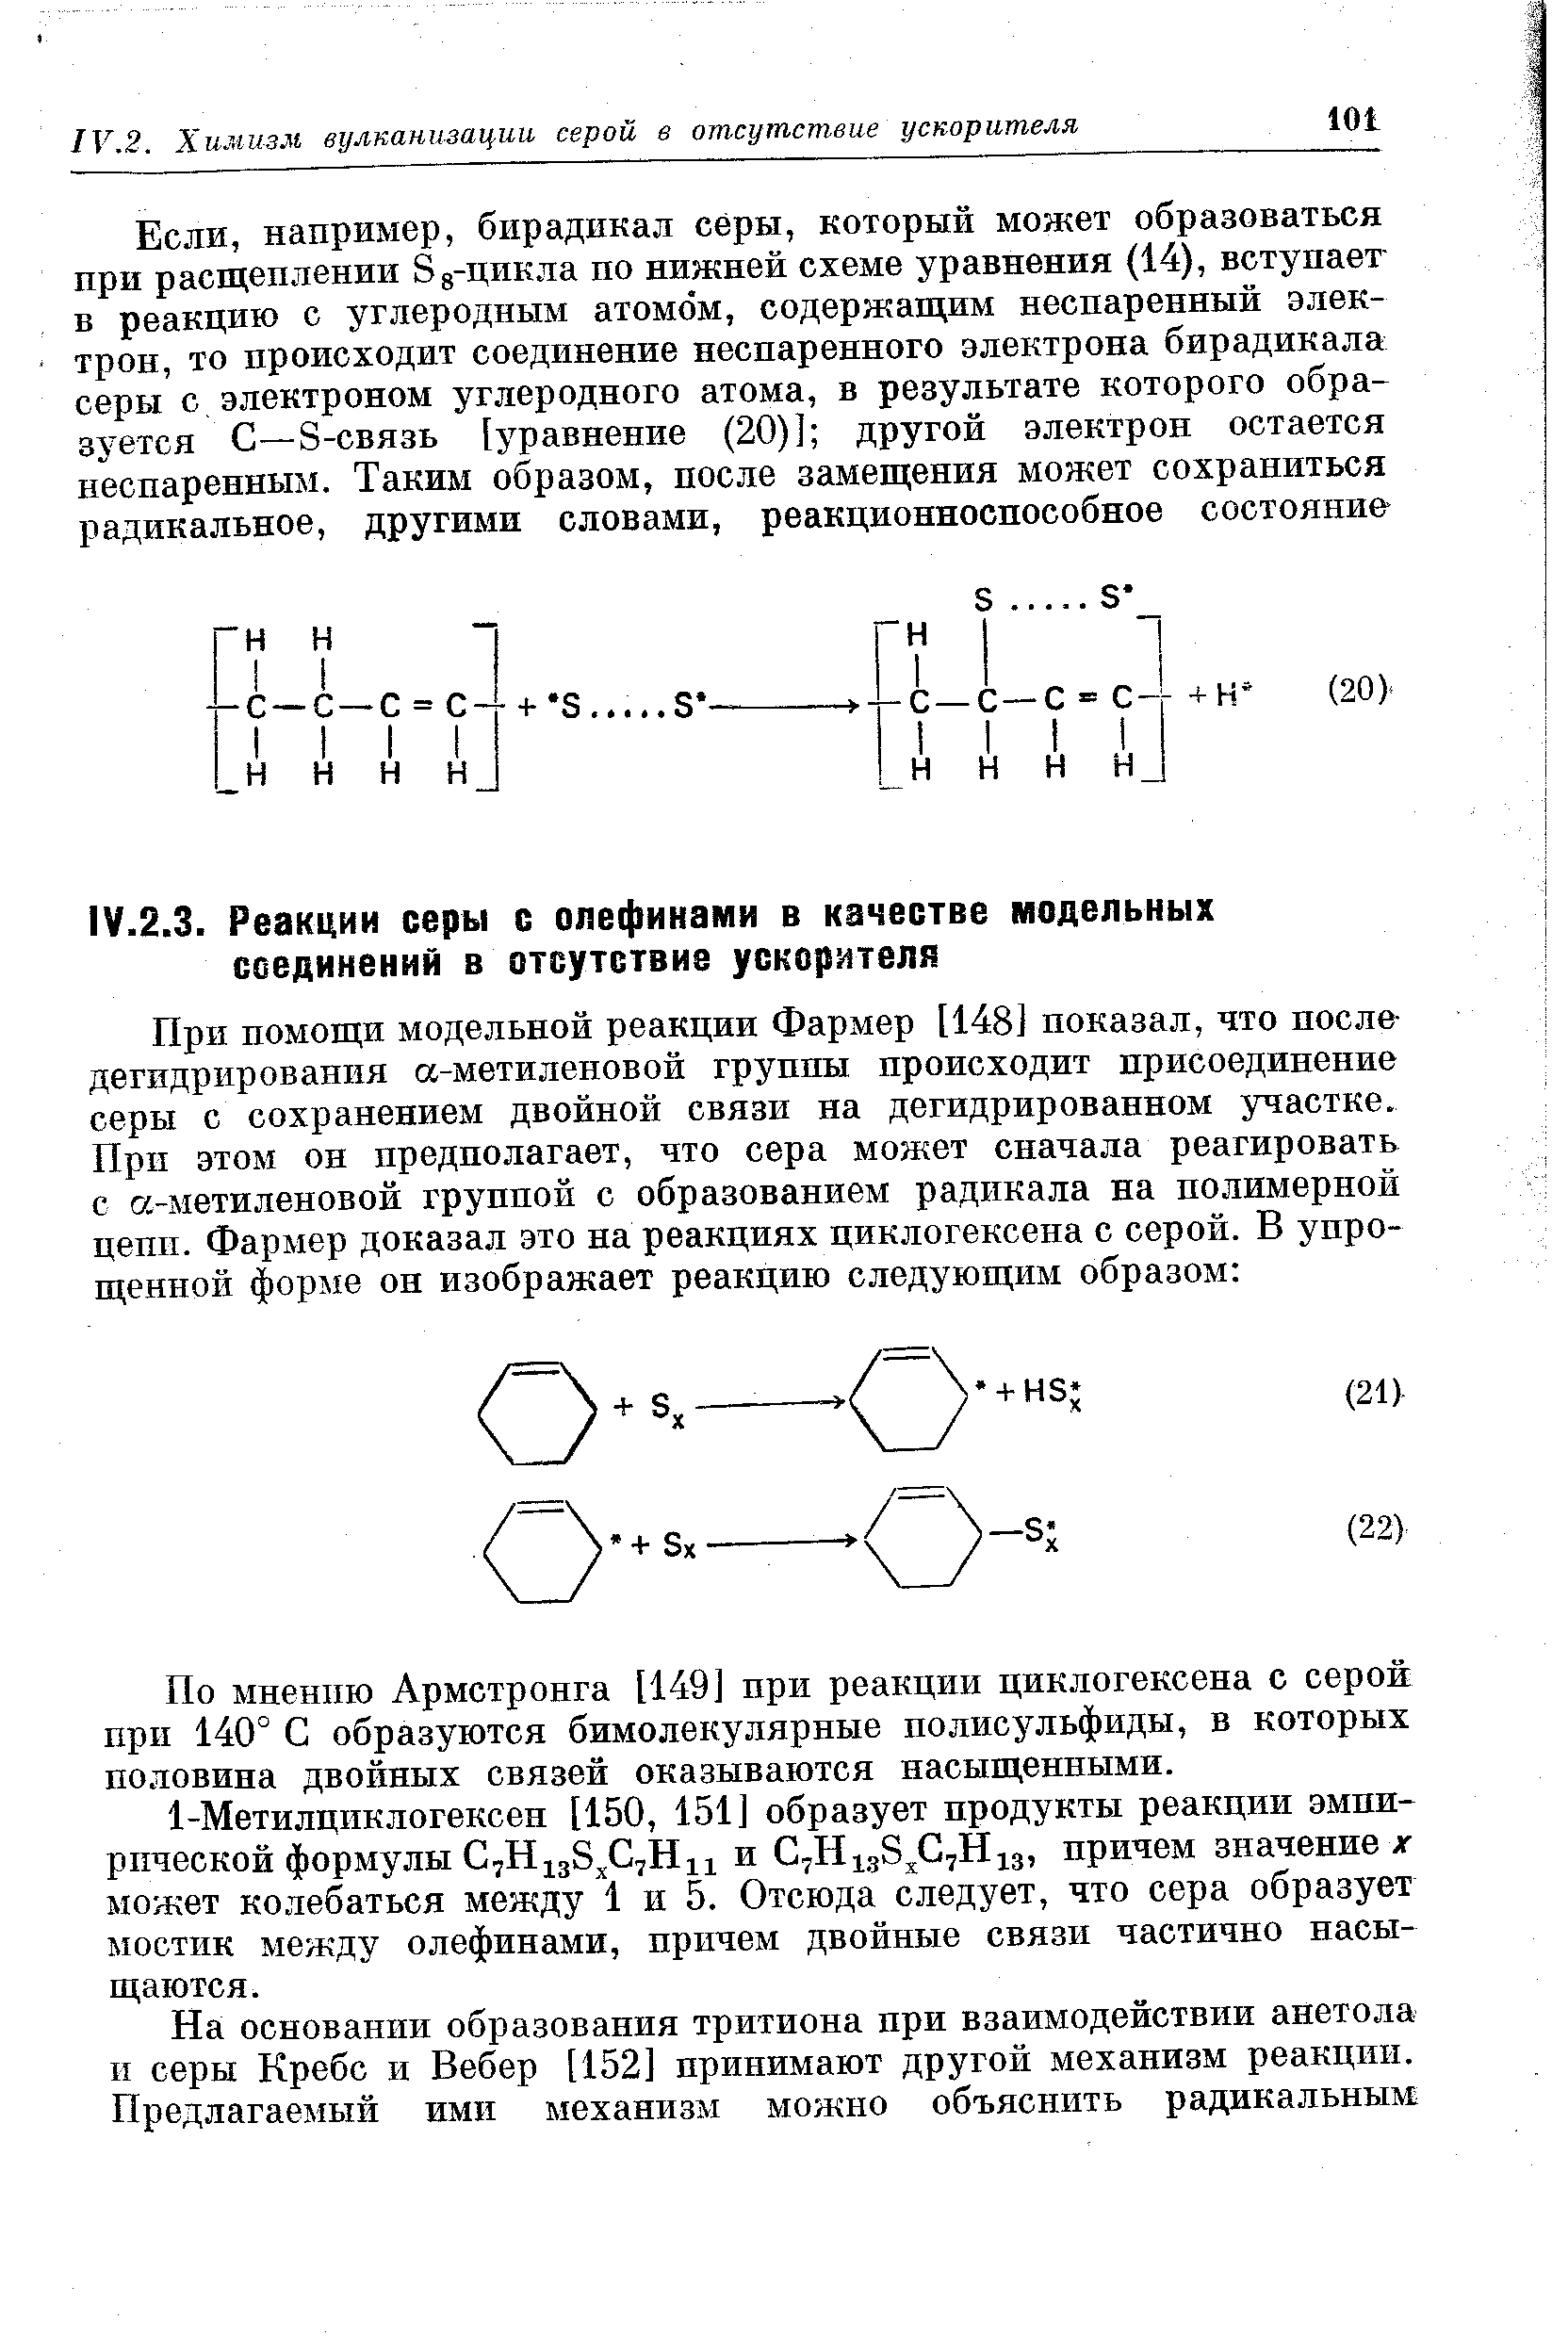 По мнению Армстронга [149] при реакции циклогексена с серой при 140° С образуются бимолекулярные полисульфиды, в которых половина двойных связей оказываются насыщенными.